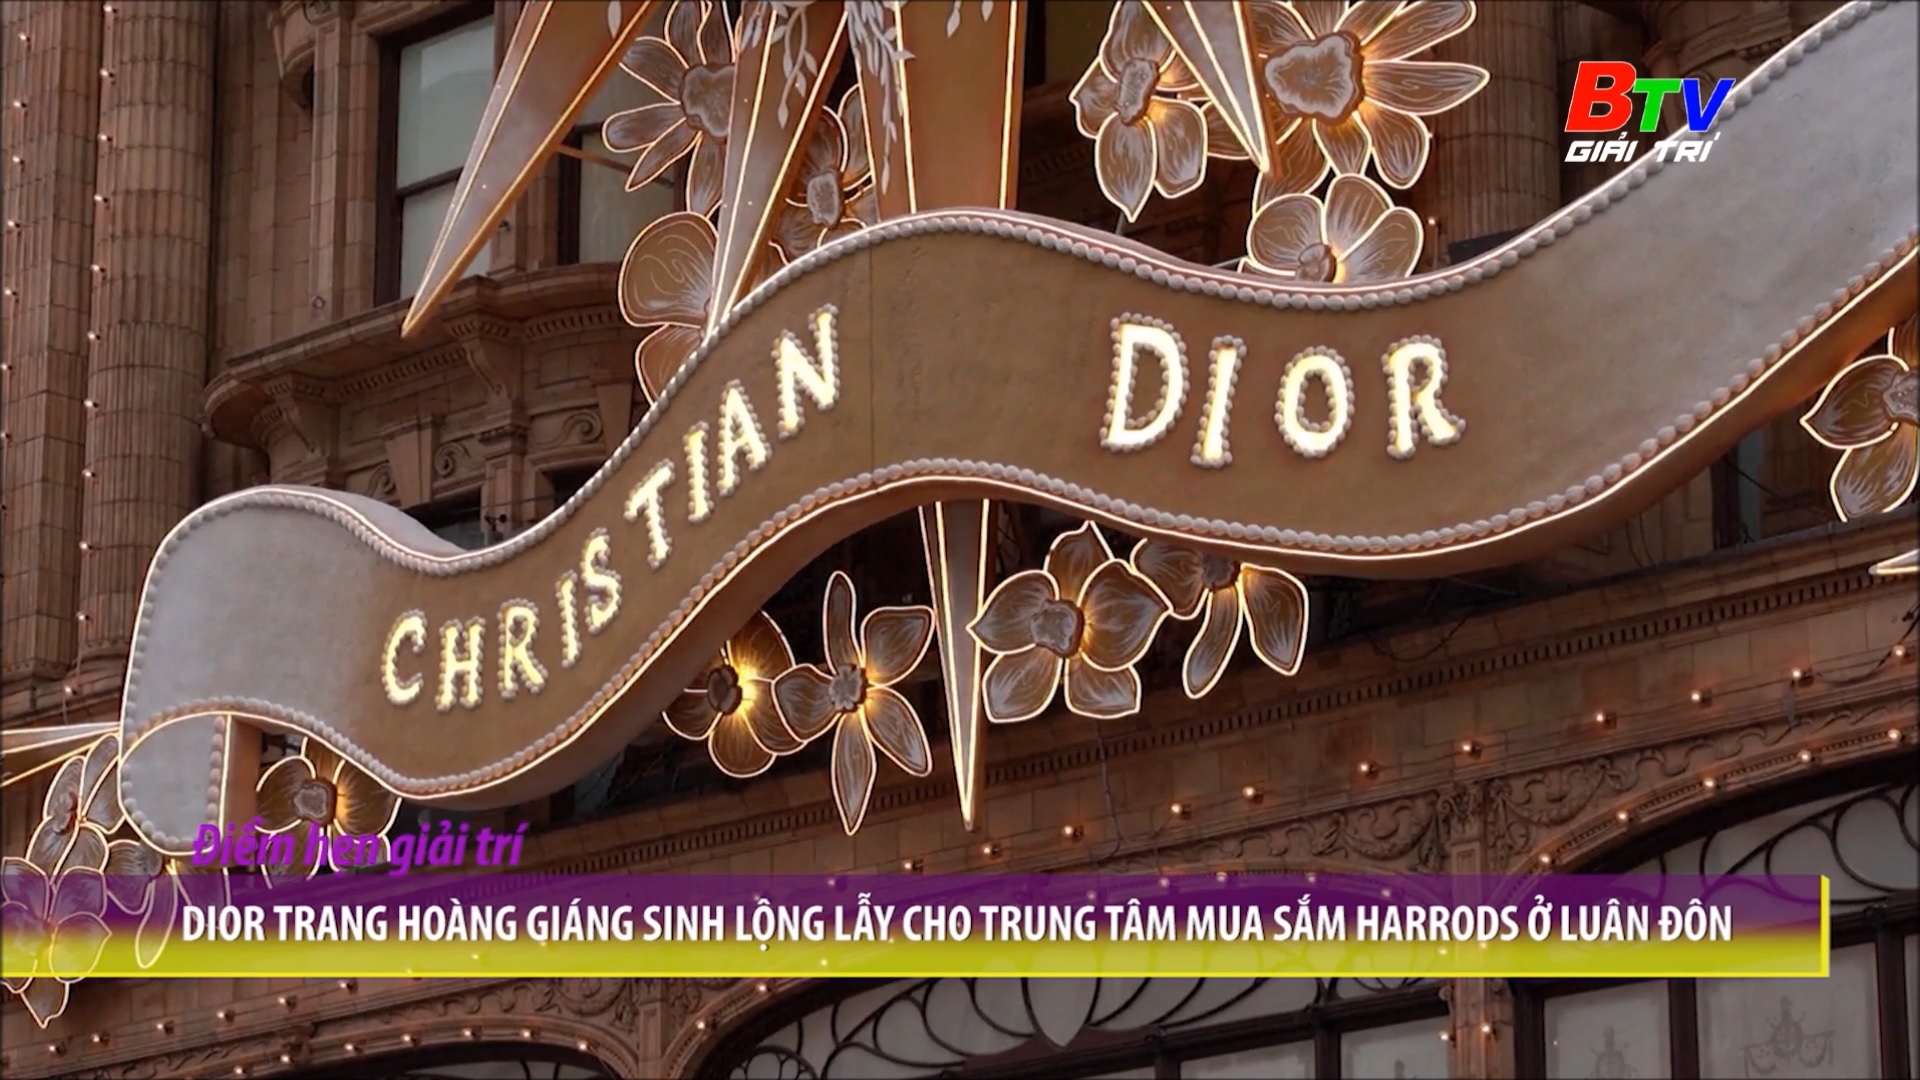 Dior trang hoàng giáng sinh lộng lẫy cho trung tâm mua sắm Harrods ở Luân Đôn